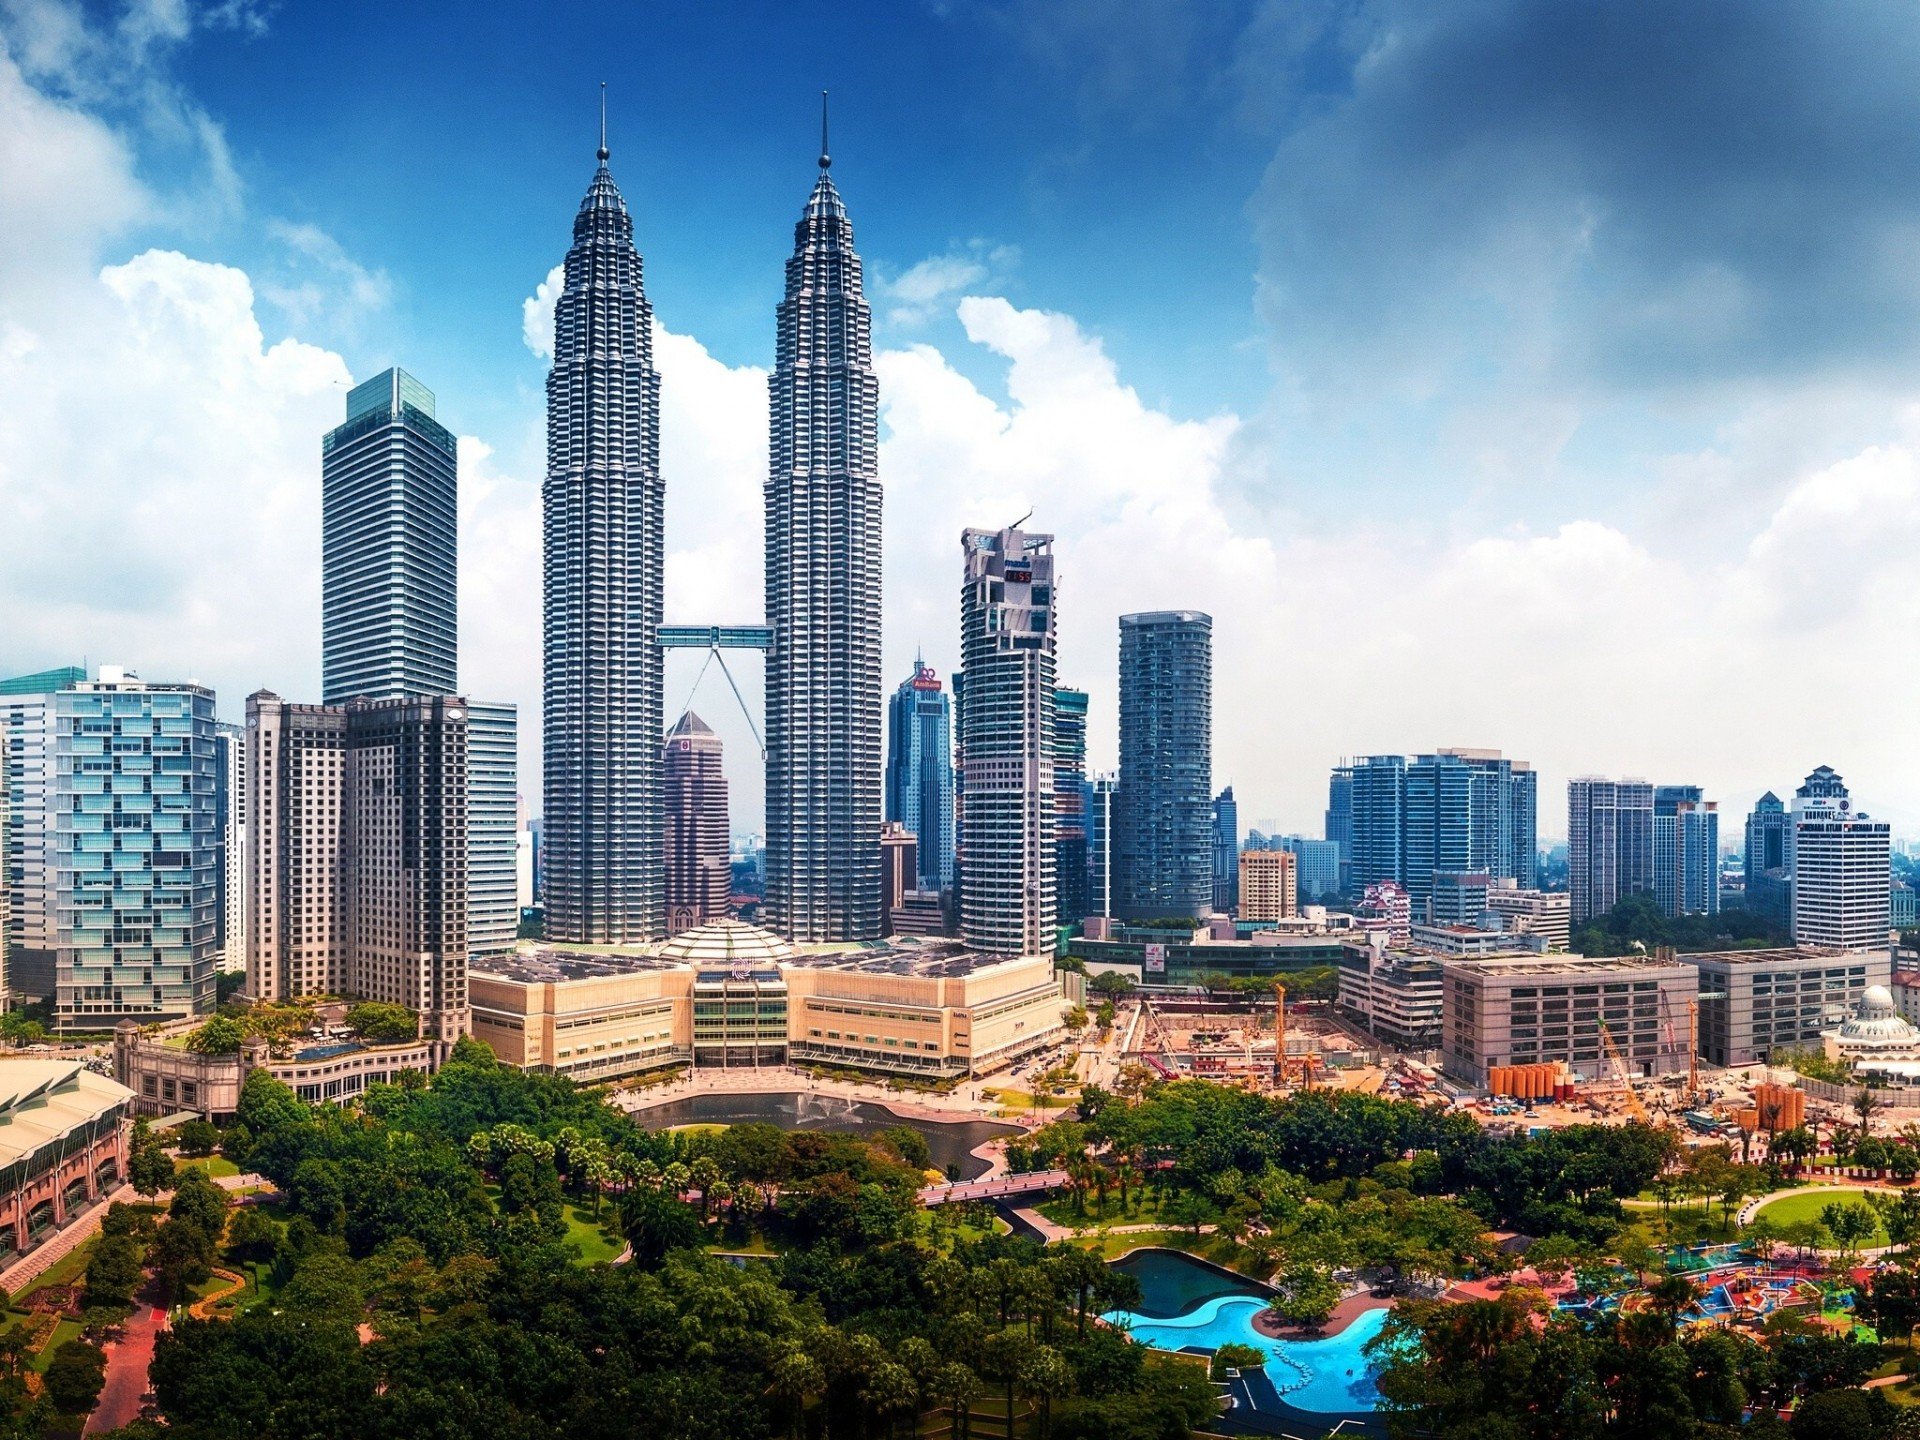 ð¥ Download Malaysia Skyscraper Panorama Building Kuala Lumpur by